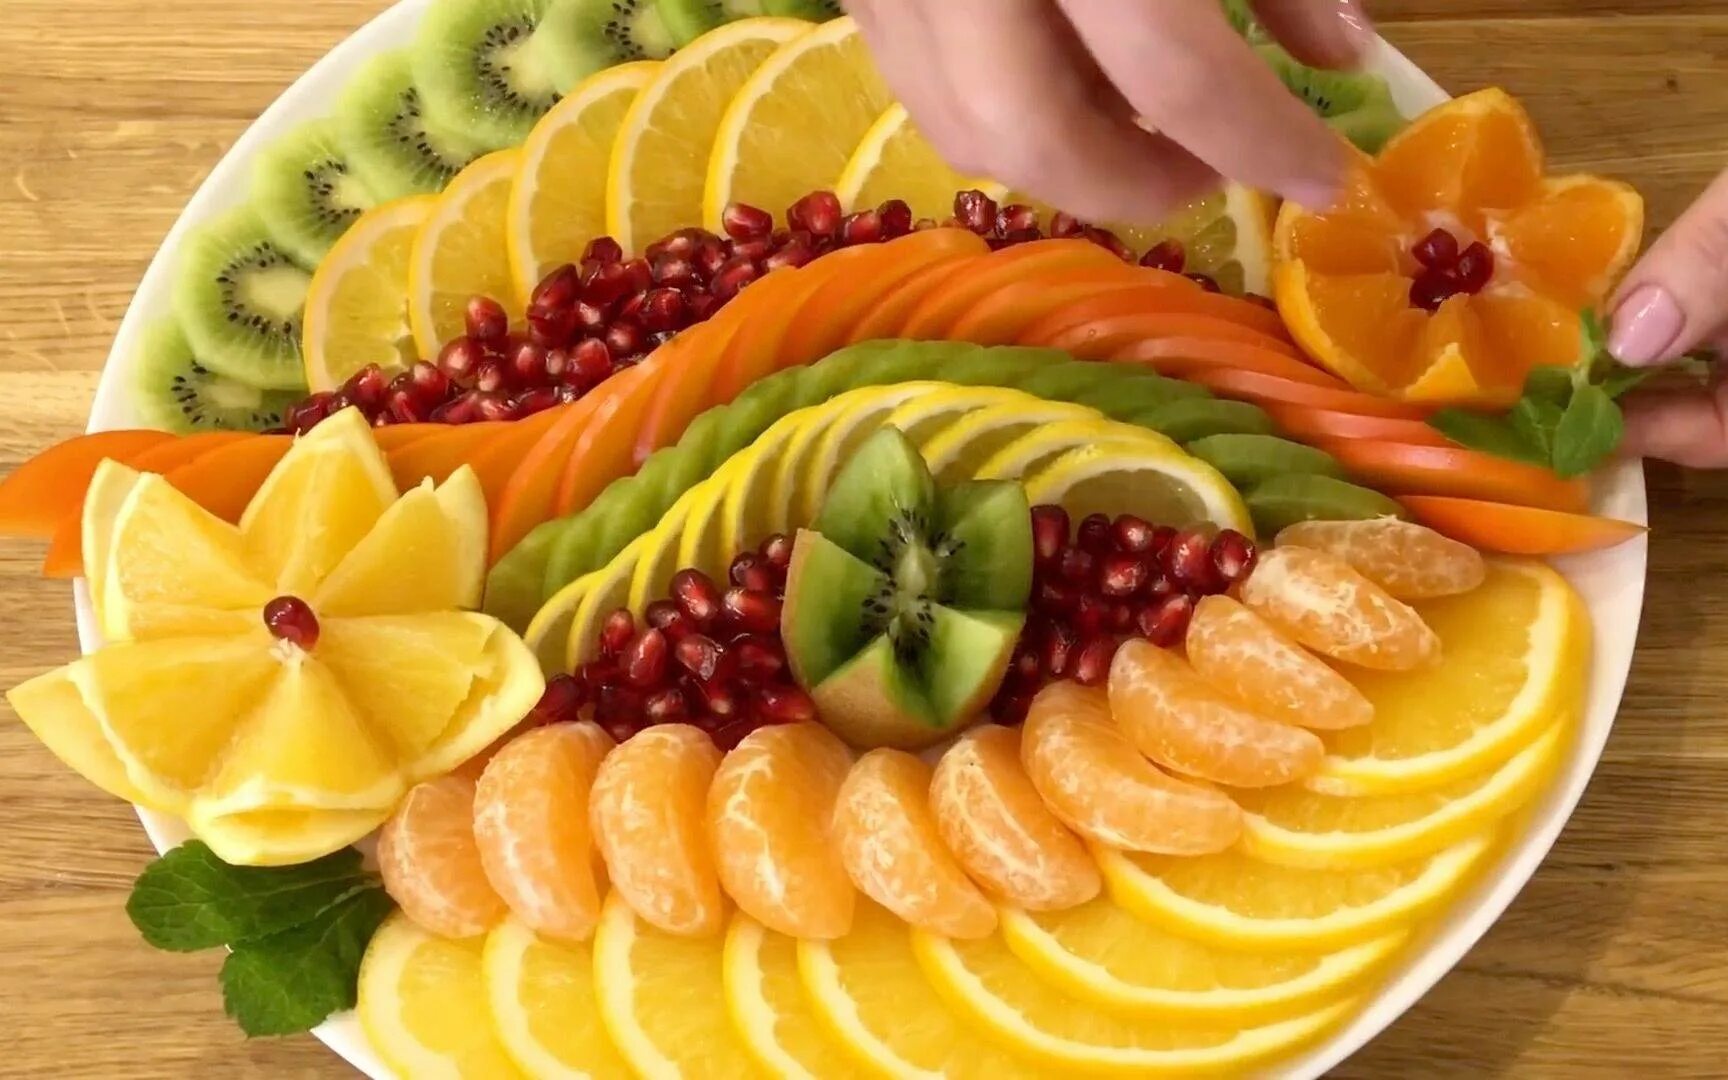 Как положит красива на тарелку. Красиво нарезать фрукты. Фруктовая тарелка. Красиво выложить фрукты. Красивая Фруктовая нарезка на праздничный стол.